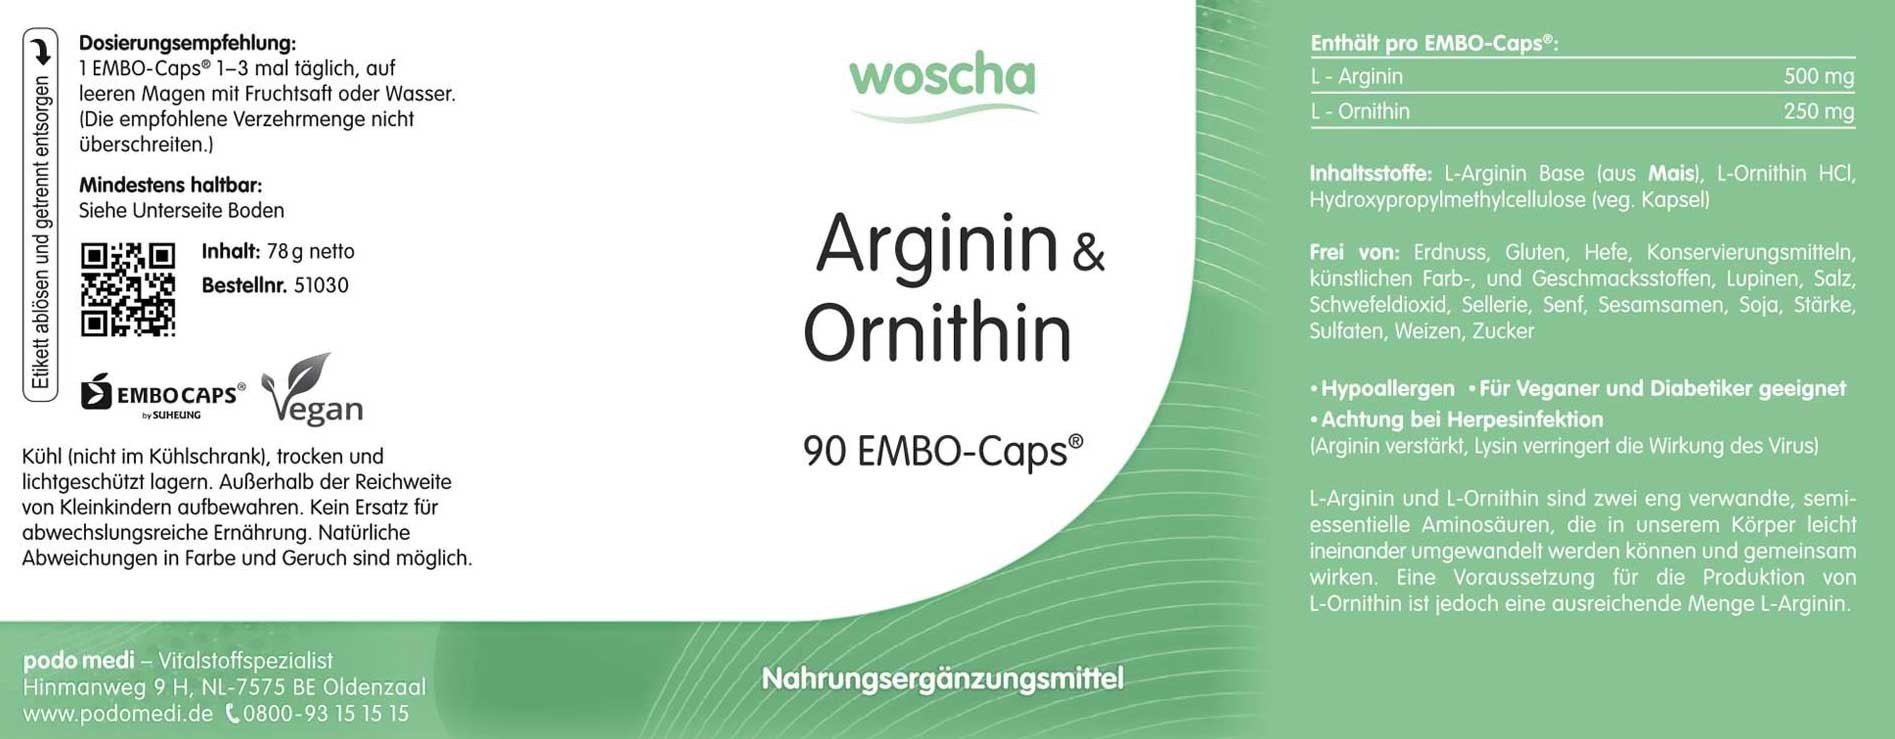 Woscha Arginin & Ornithin von podo medi beinhaltet 90 EMBO-Caps Etikett